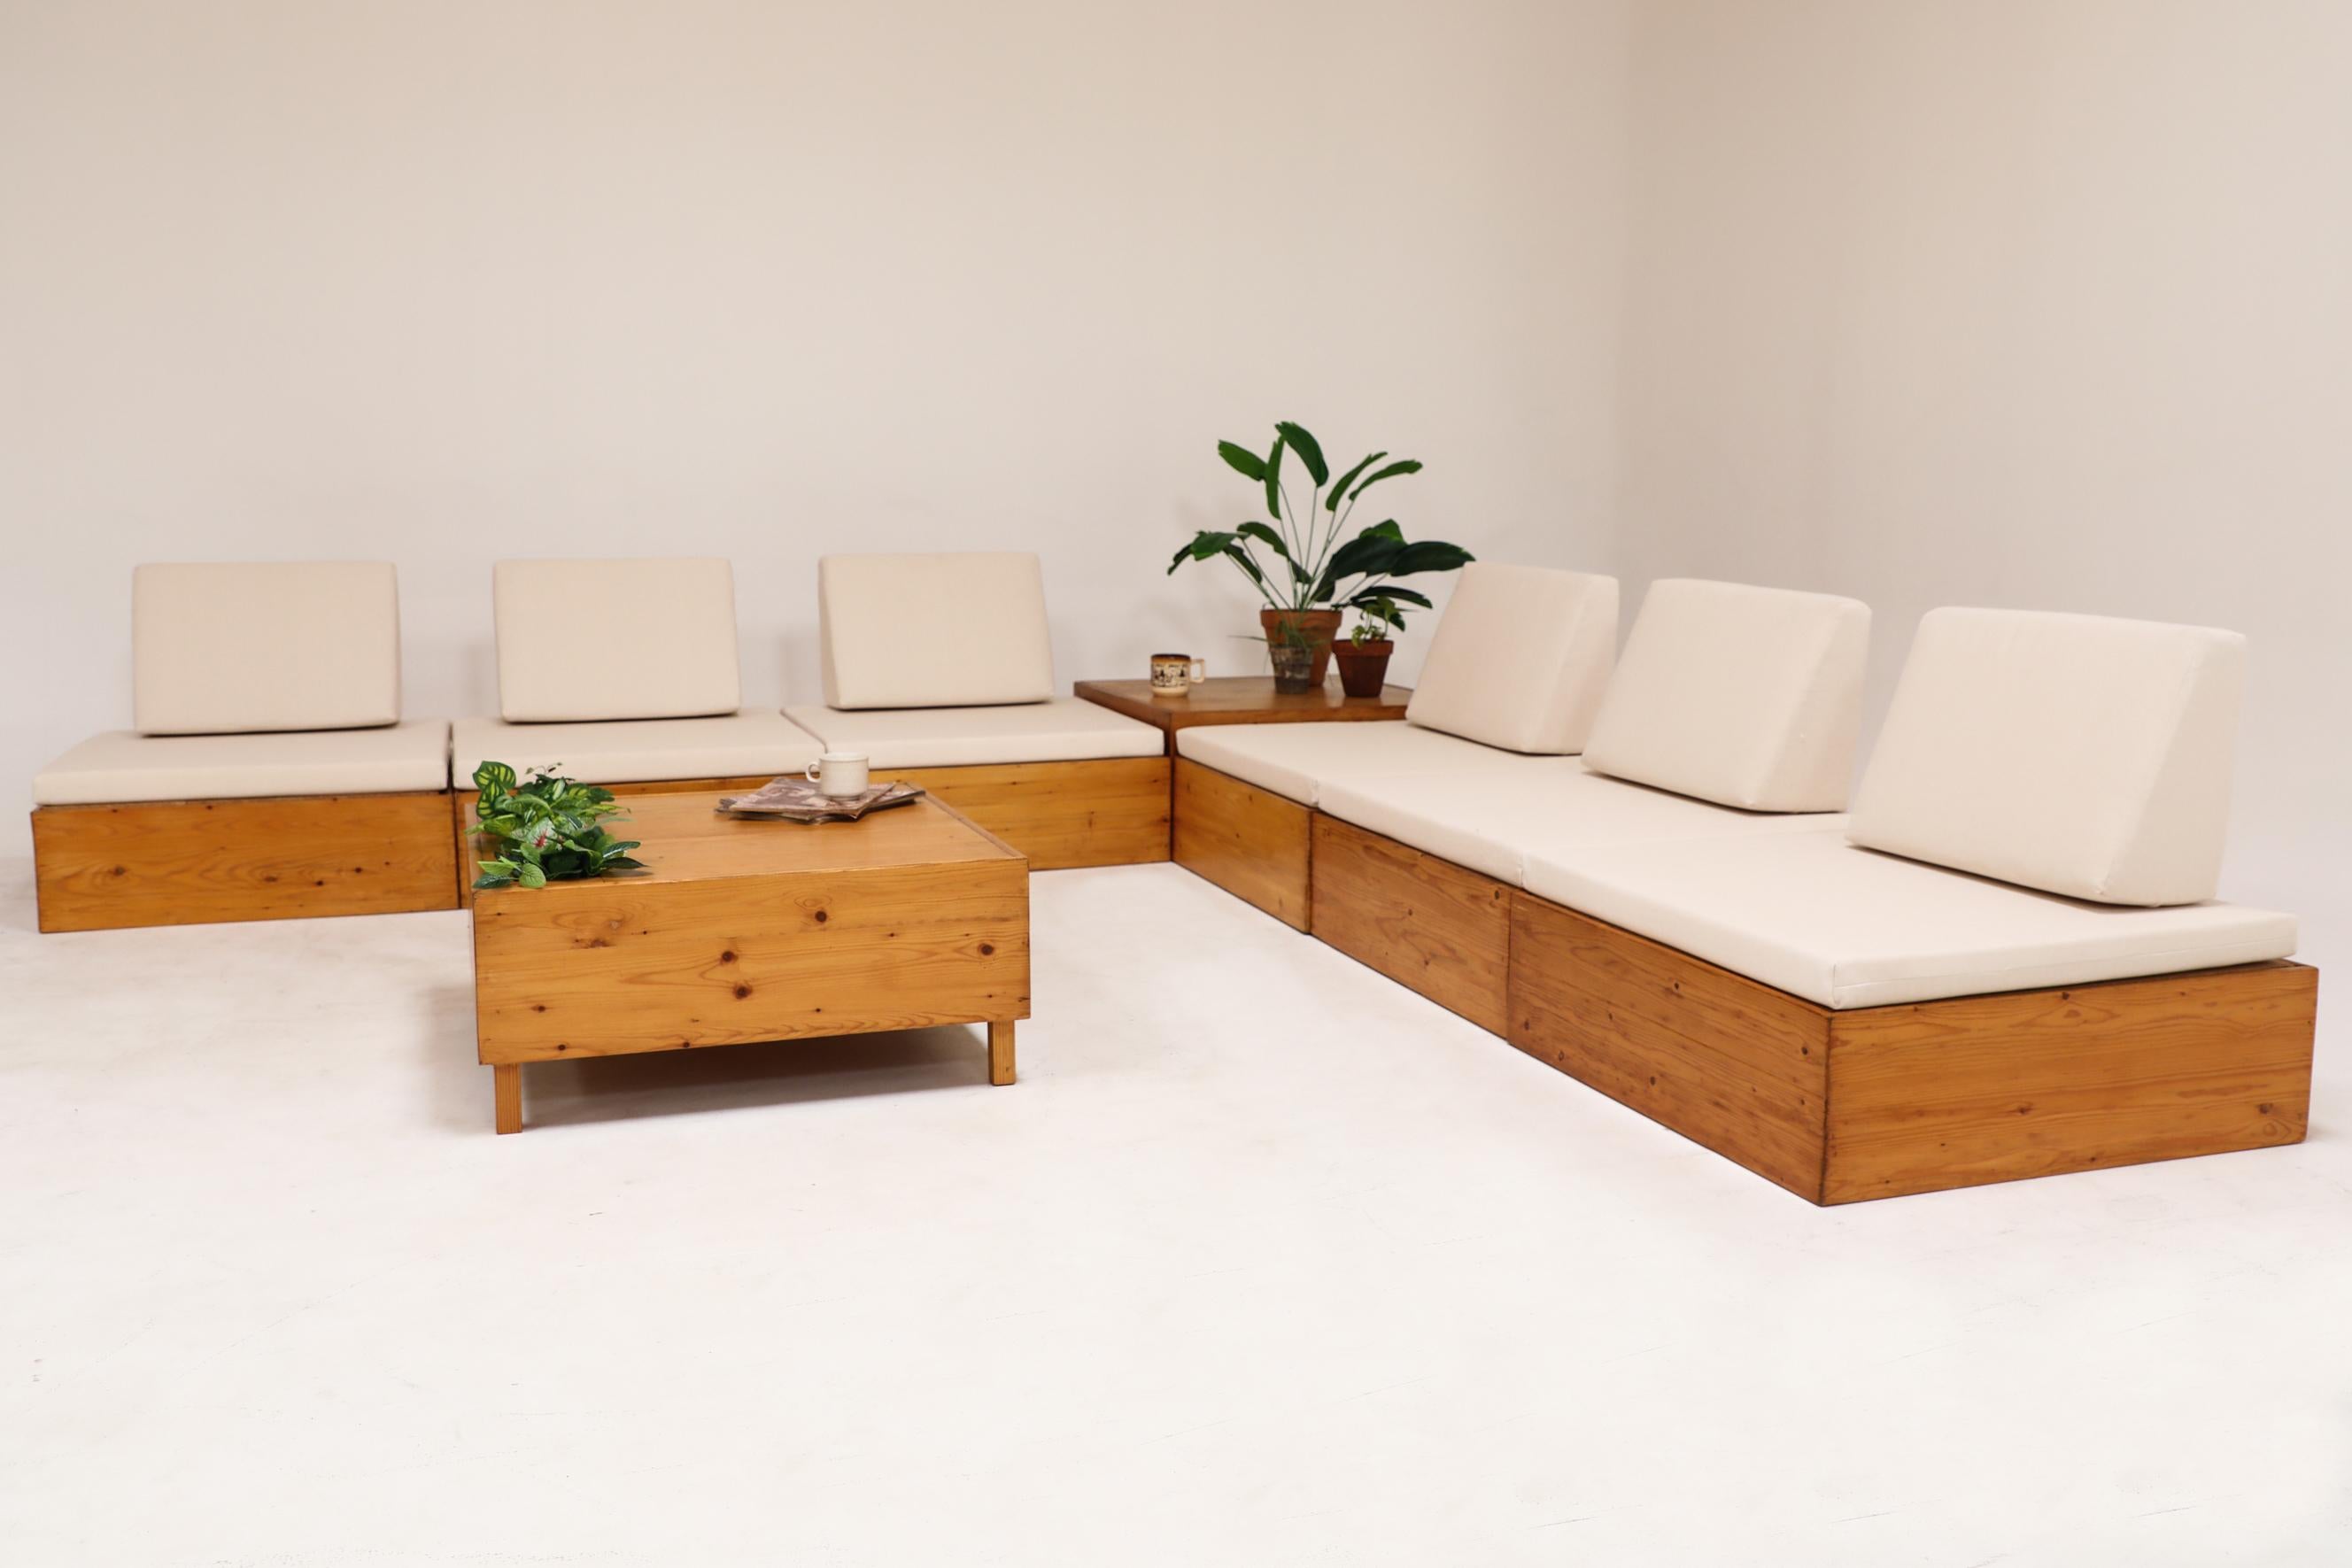 Ate Van Apeldoorn inspiriertes Kiefernholz-Sofa-Set mit neuen Sitzmöbeln aus Segeltuch (Niederländisch)